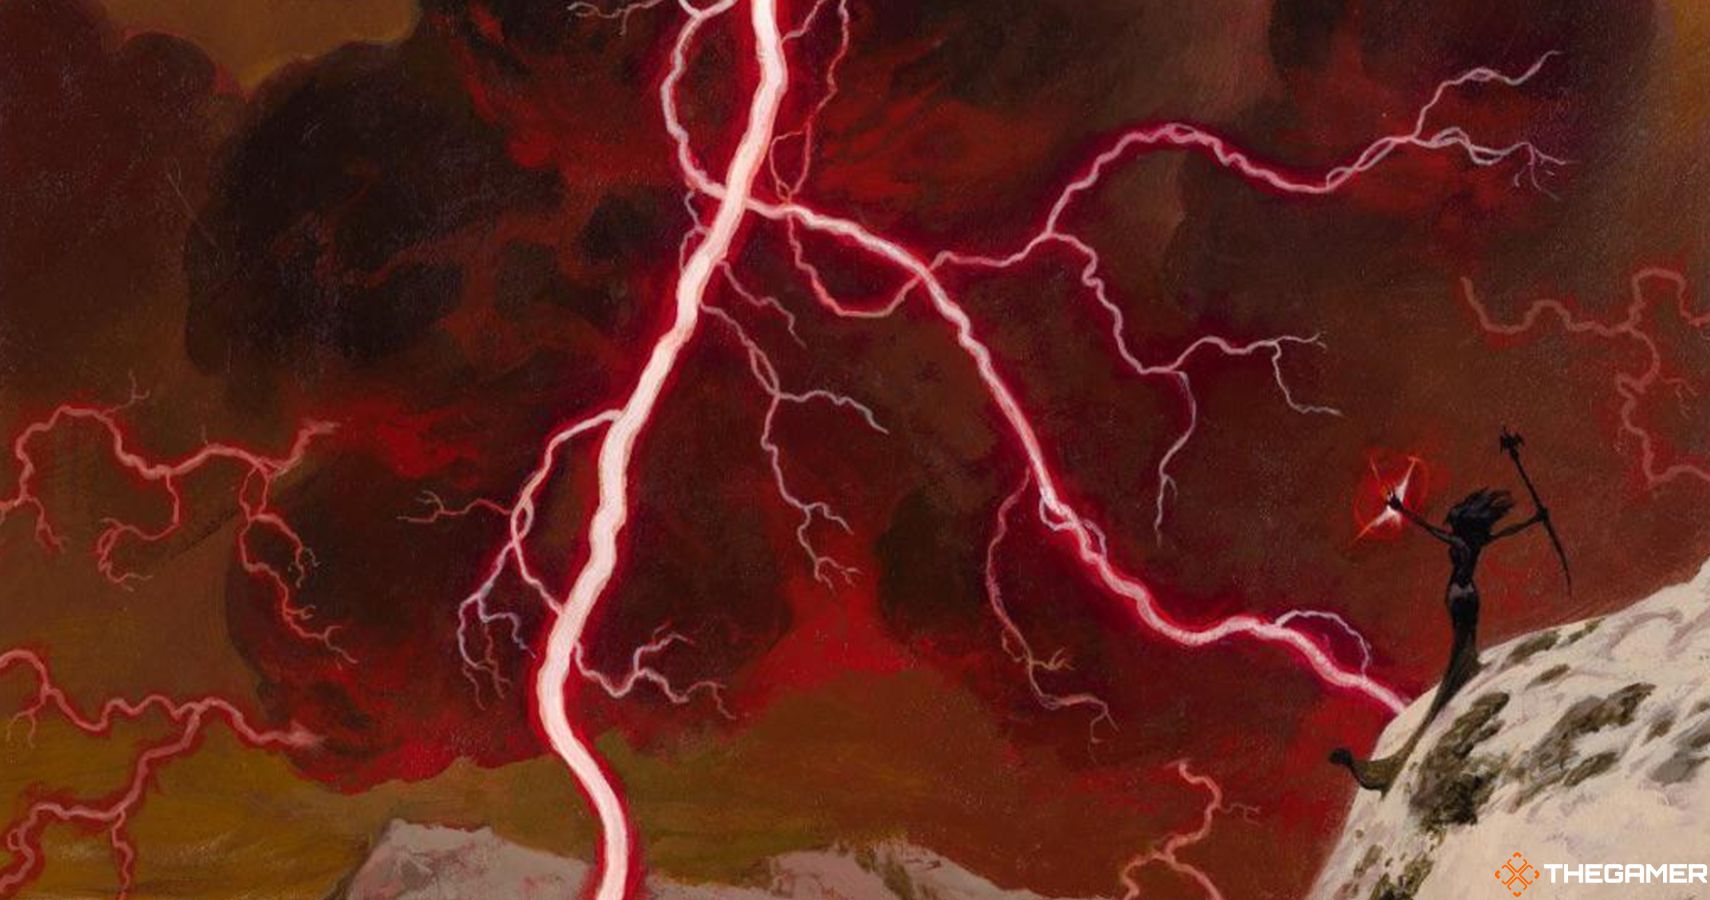 Lightning Bolt by Christopher Moeller